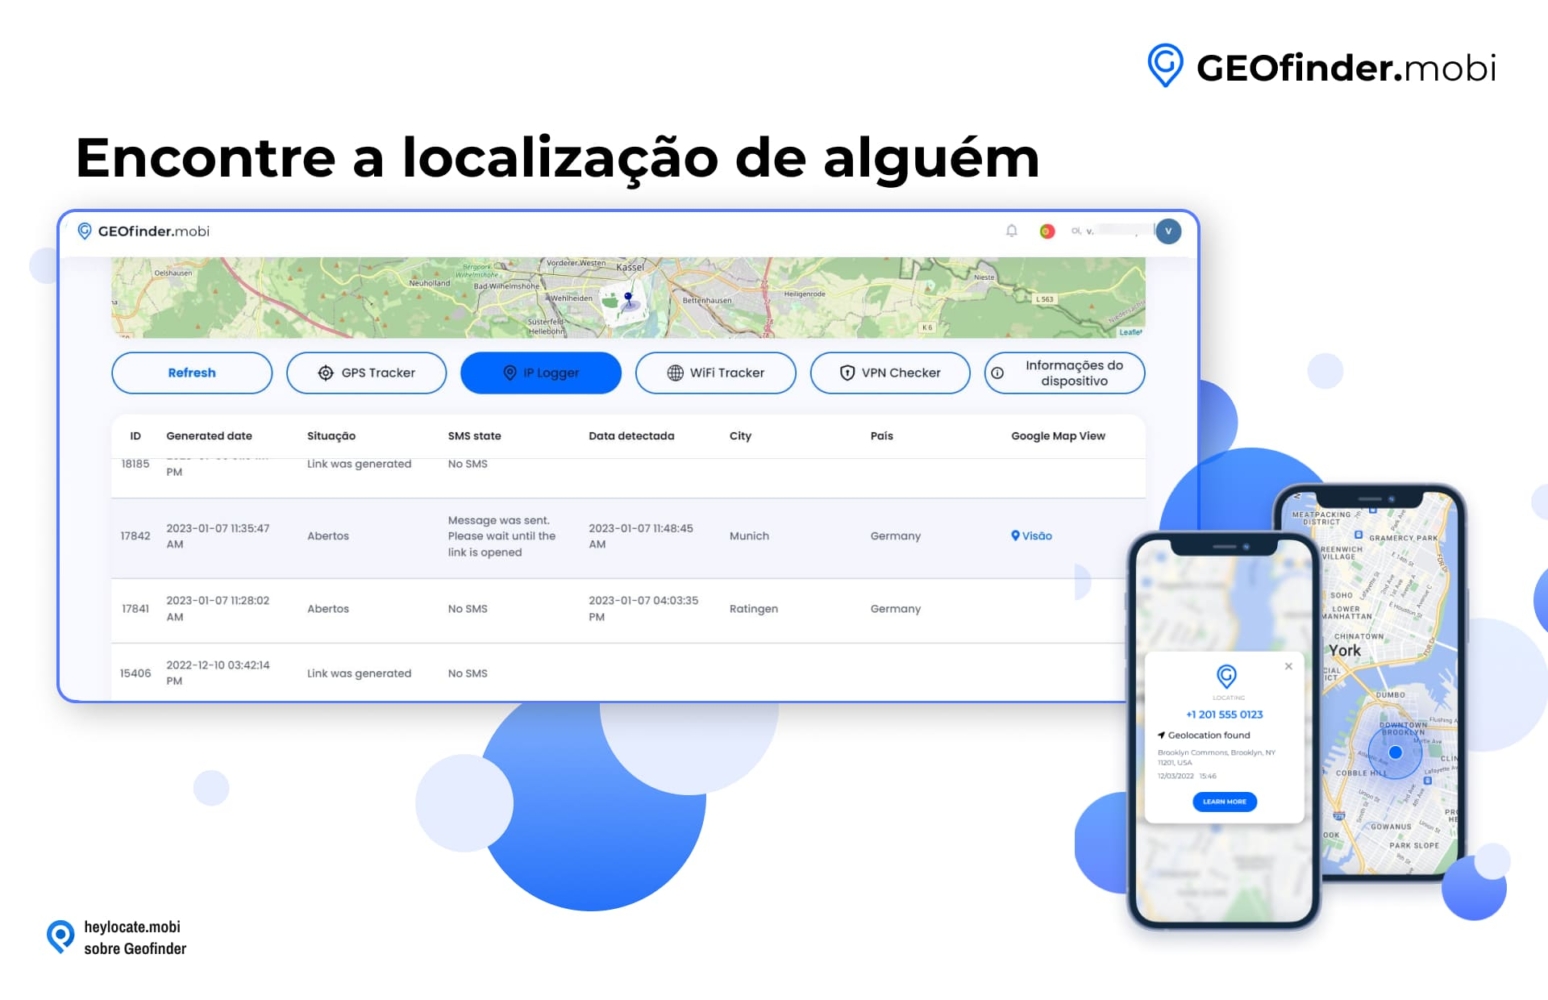 Captura de tela da página da Web GEOfinder.mobi exibindo um mapa com uma localização definida e uma interface de usuário mostrando opções para rastreamento de GPS, registro de IP, rastreamento de WiFi, verificação de VPN e informações do dispositivo, juntamente com um telefone celular mostrando uma localização mapeada.